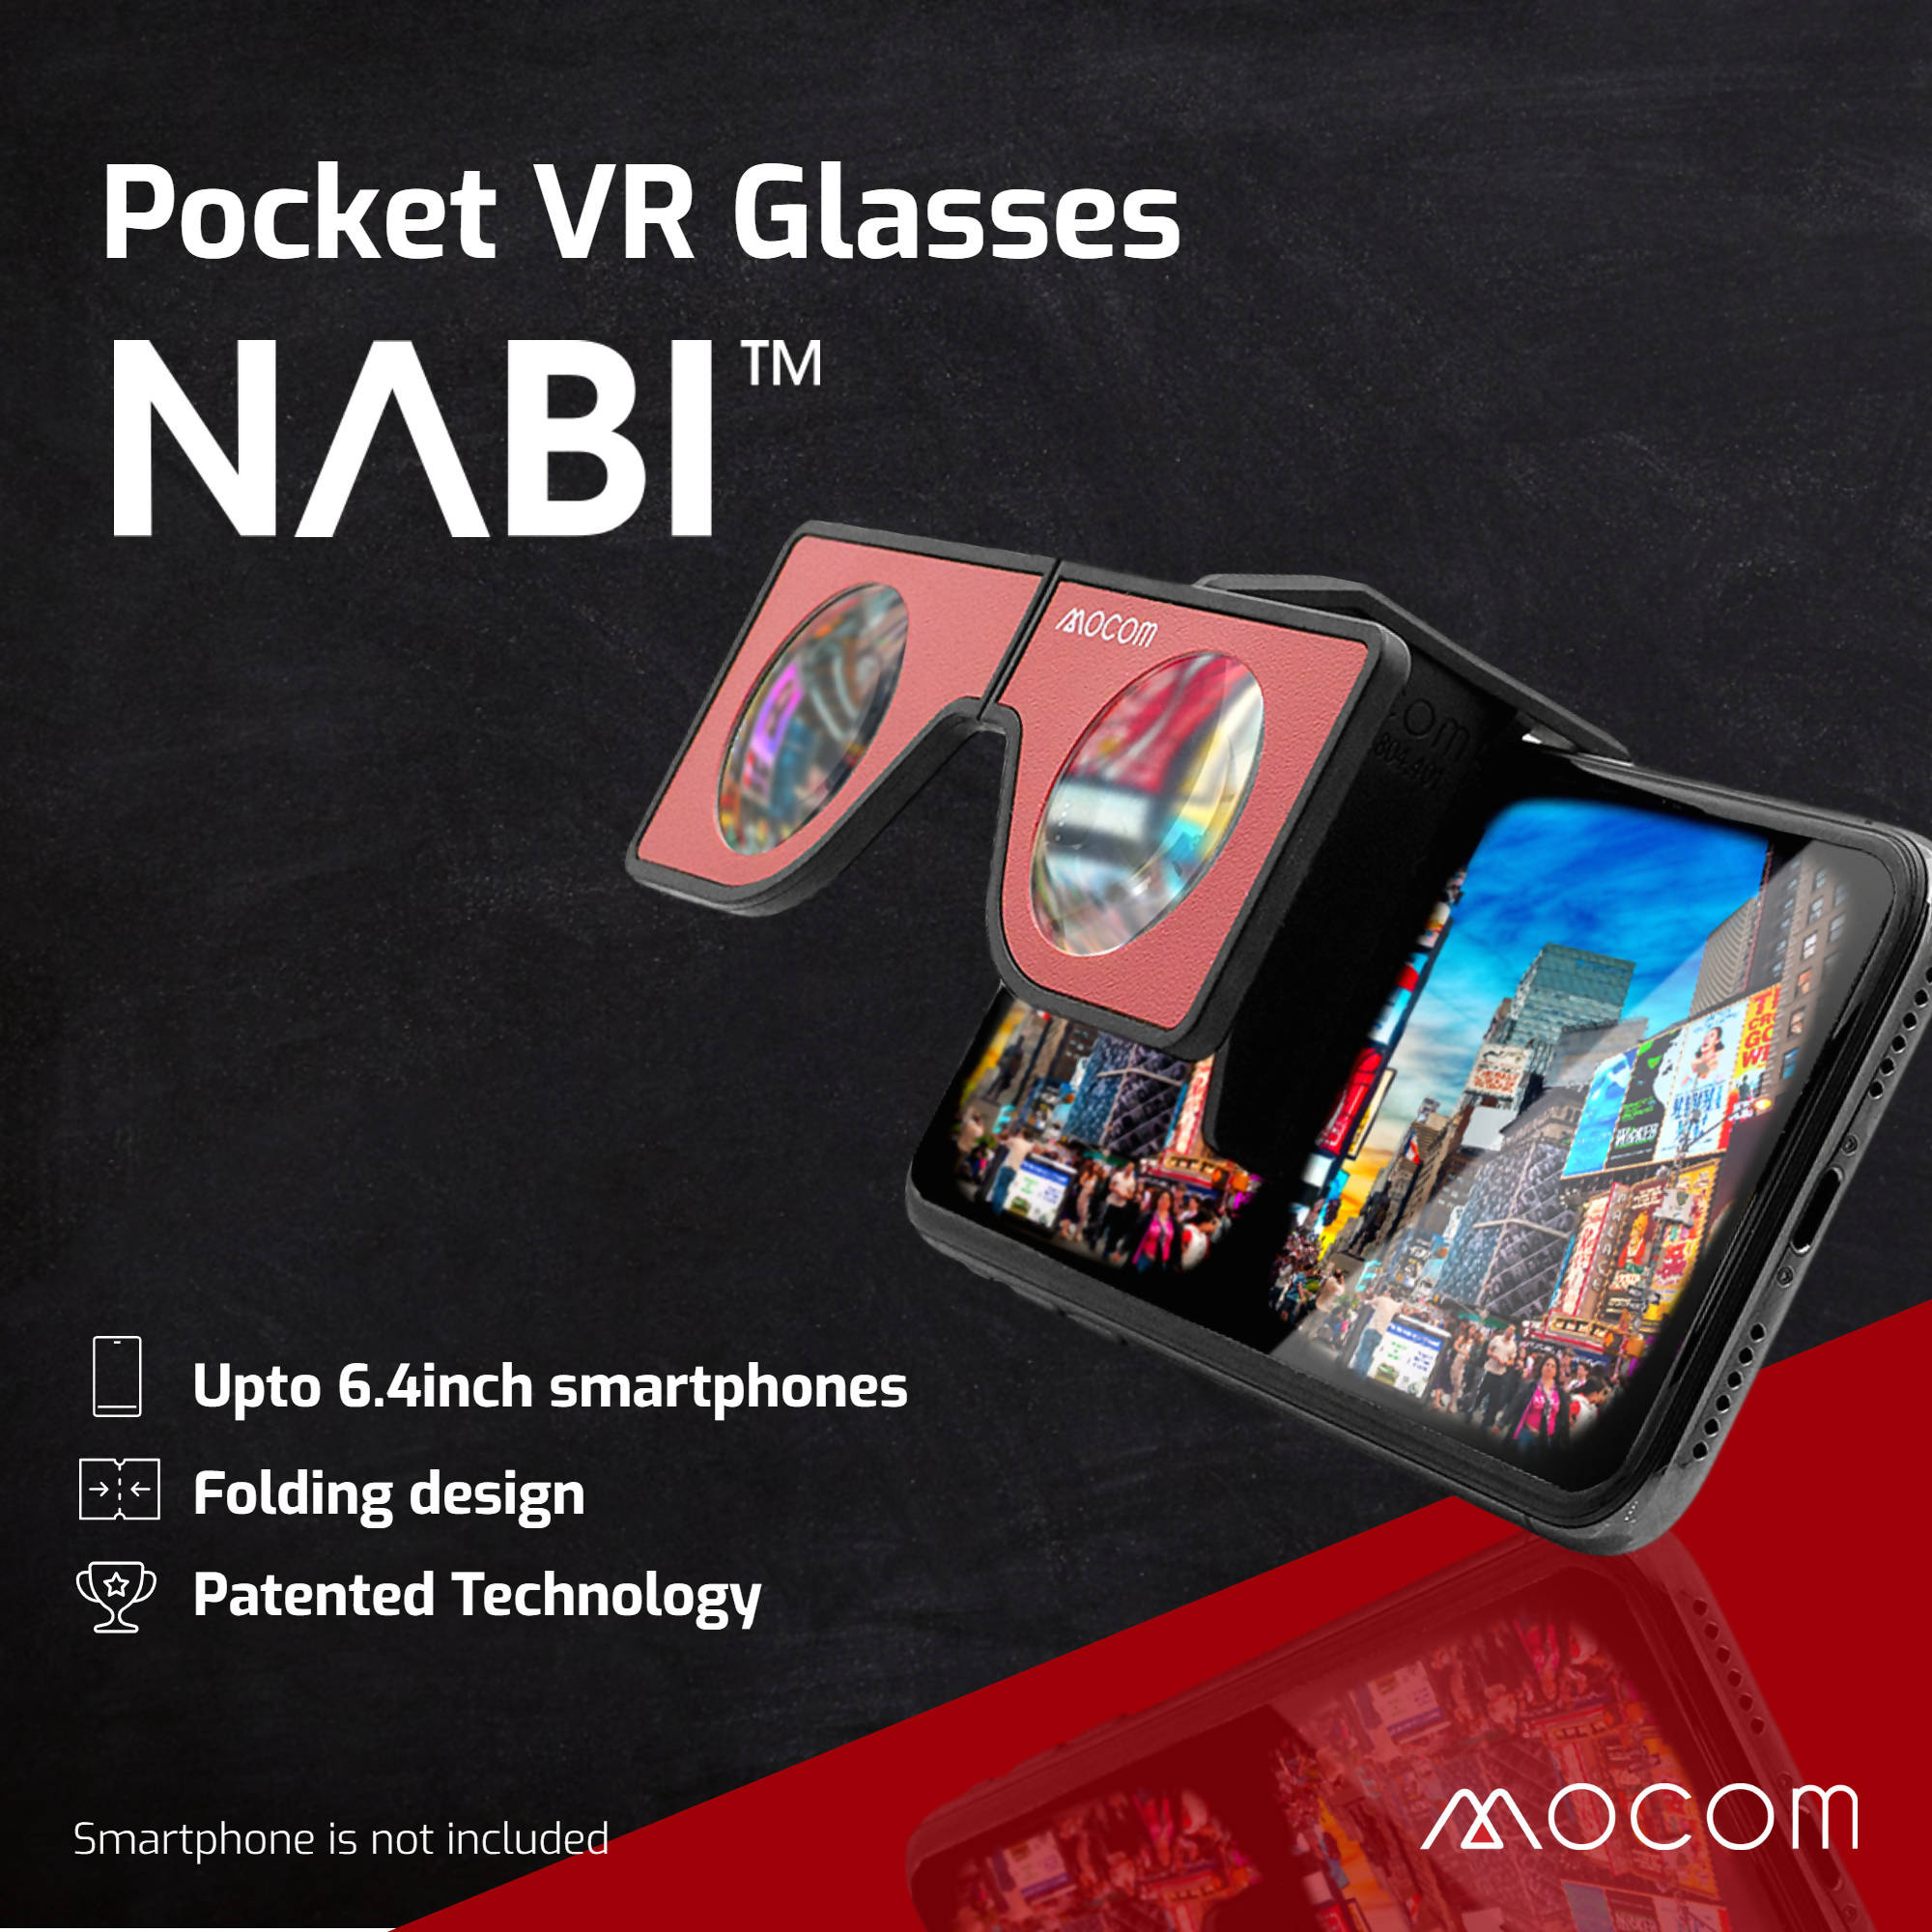 [Mocom] Portable VR glasses "NABI" for smartphones